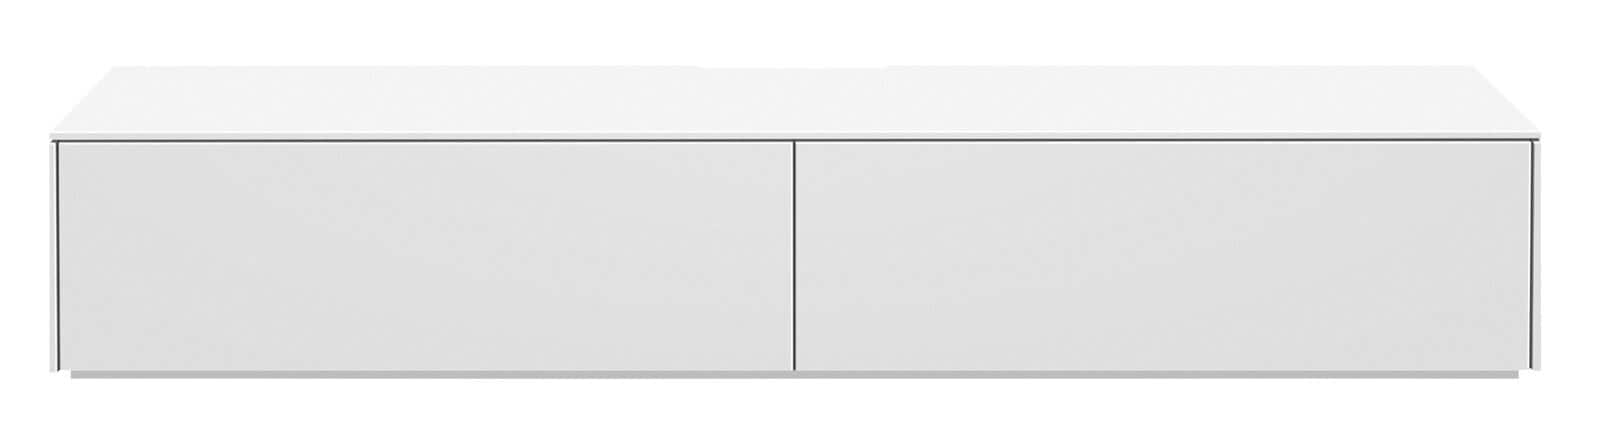 Lowboard BONO 220 x 42 cm weiß